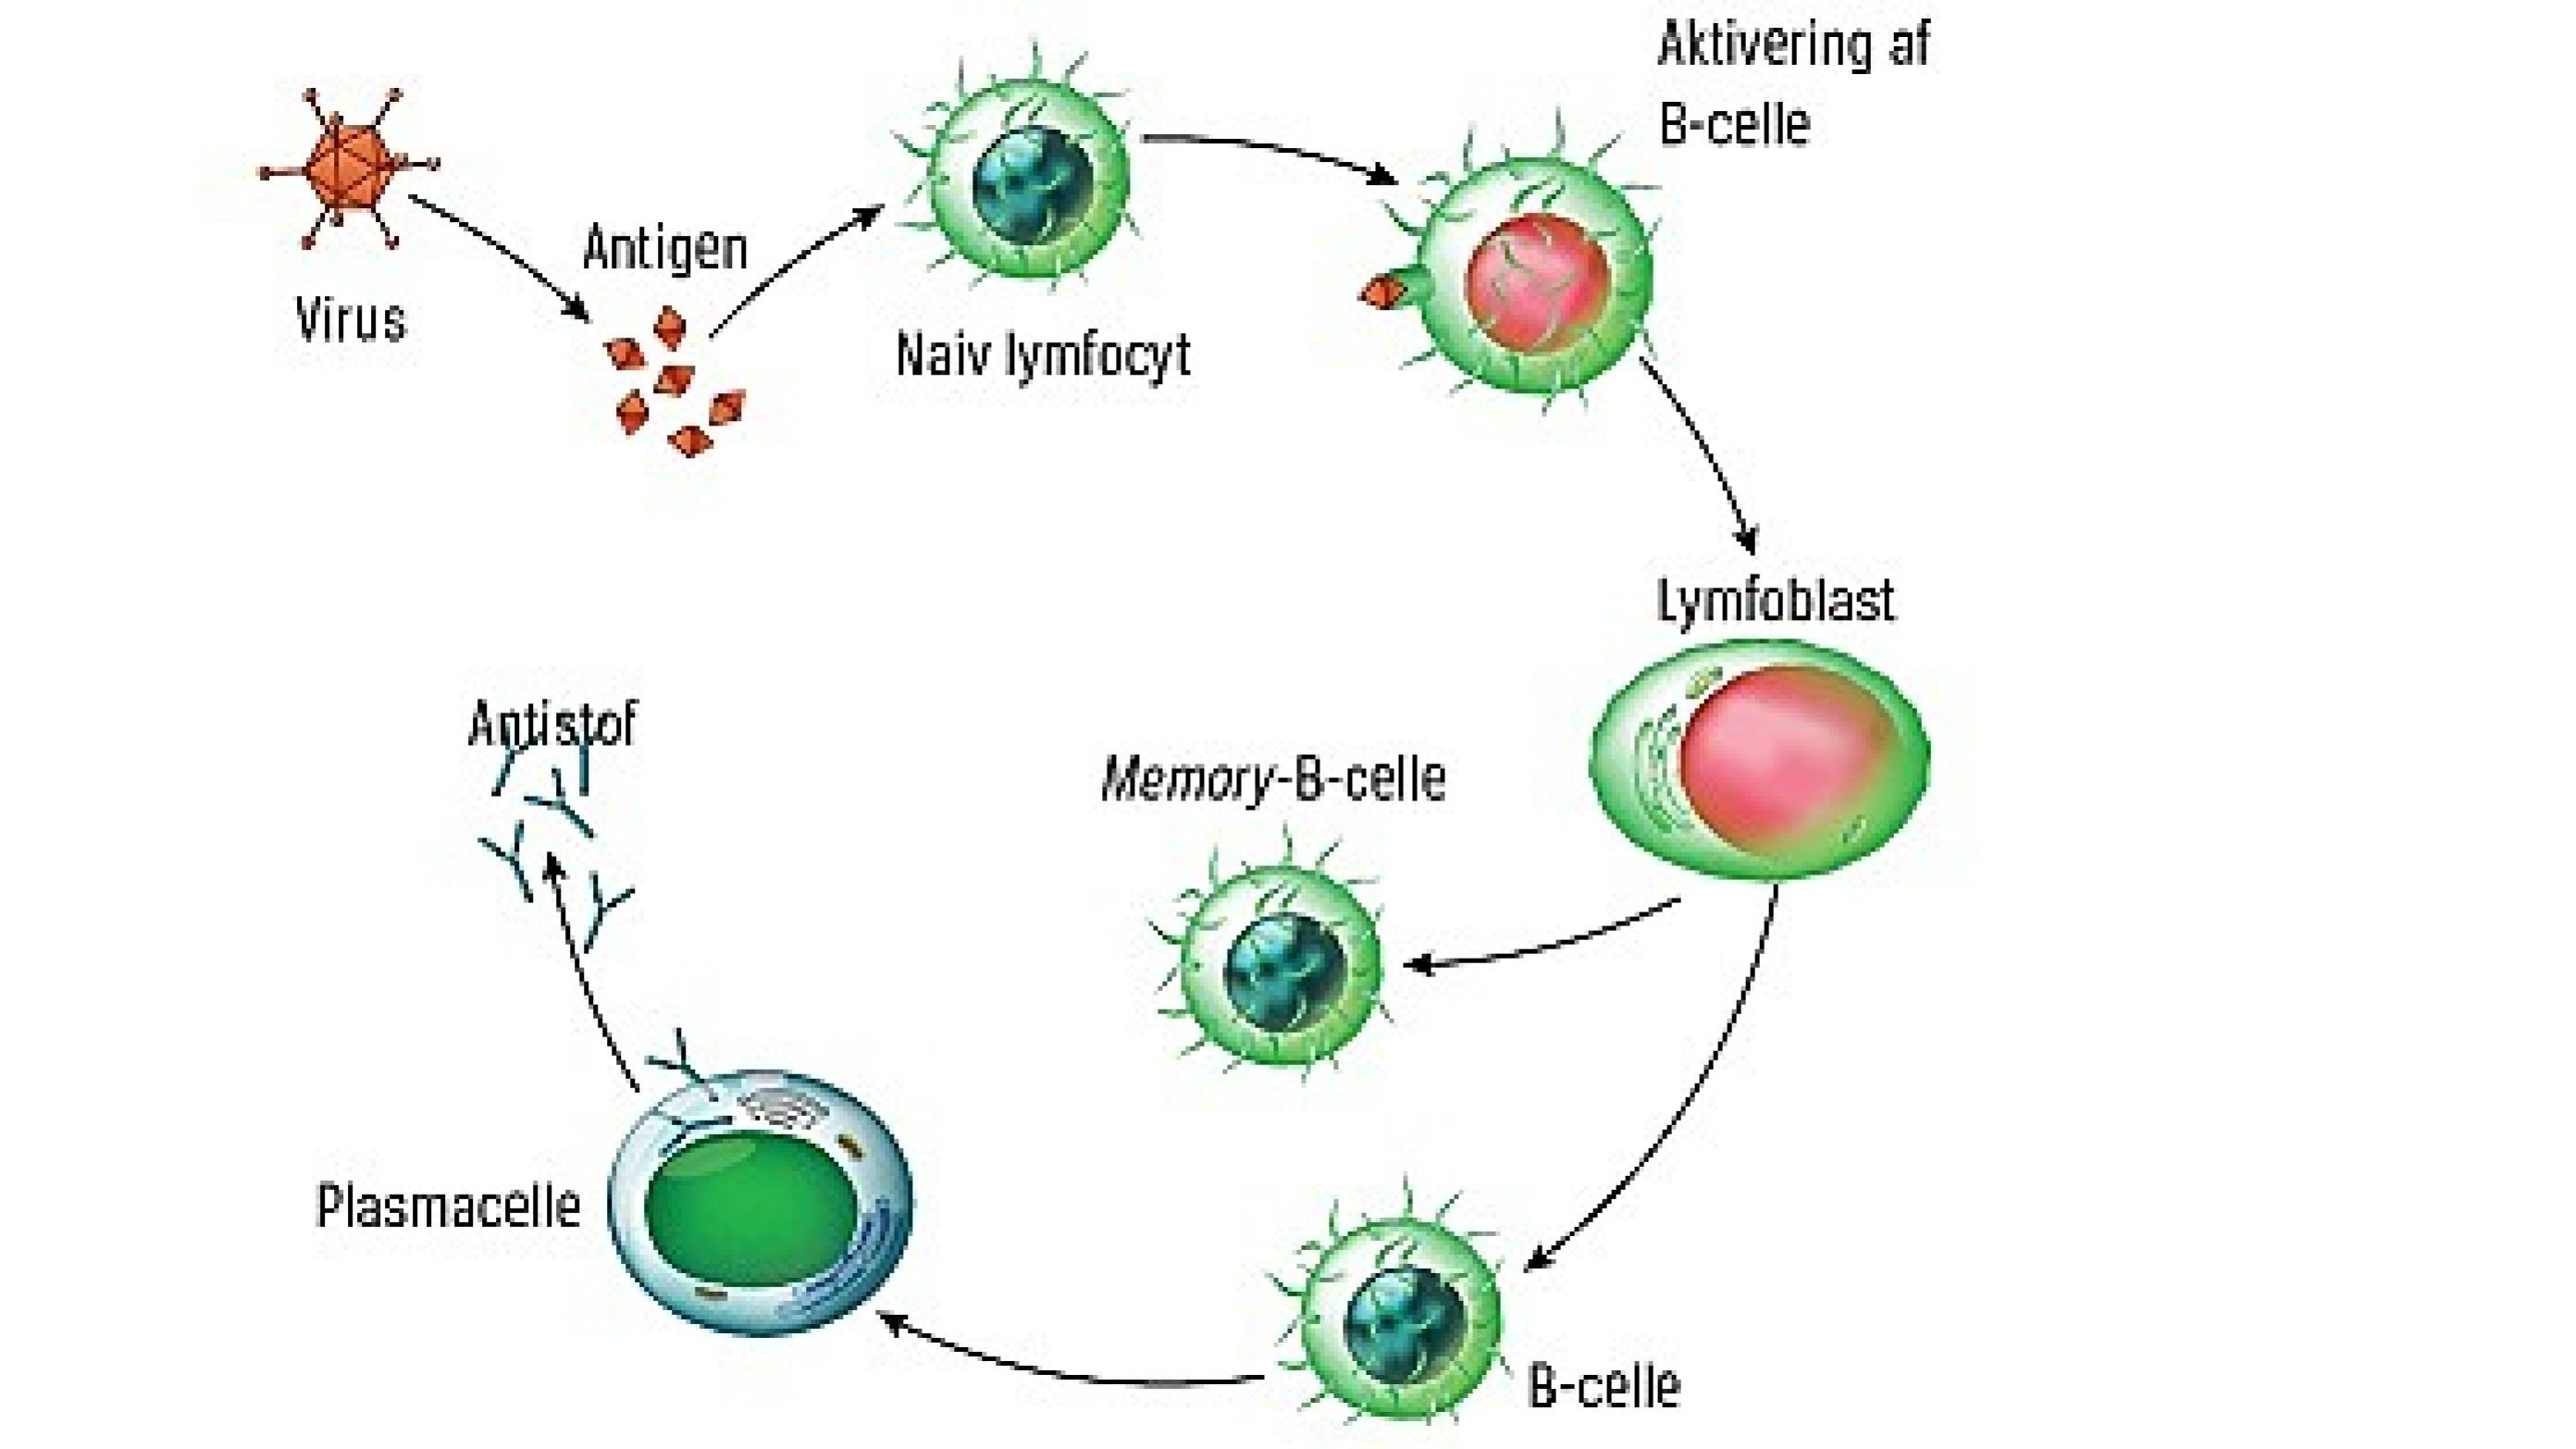 Aktivering og uddifferentiering af naiv B-celle til plasmacelle og memory-B-celle